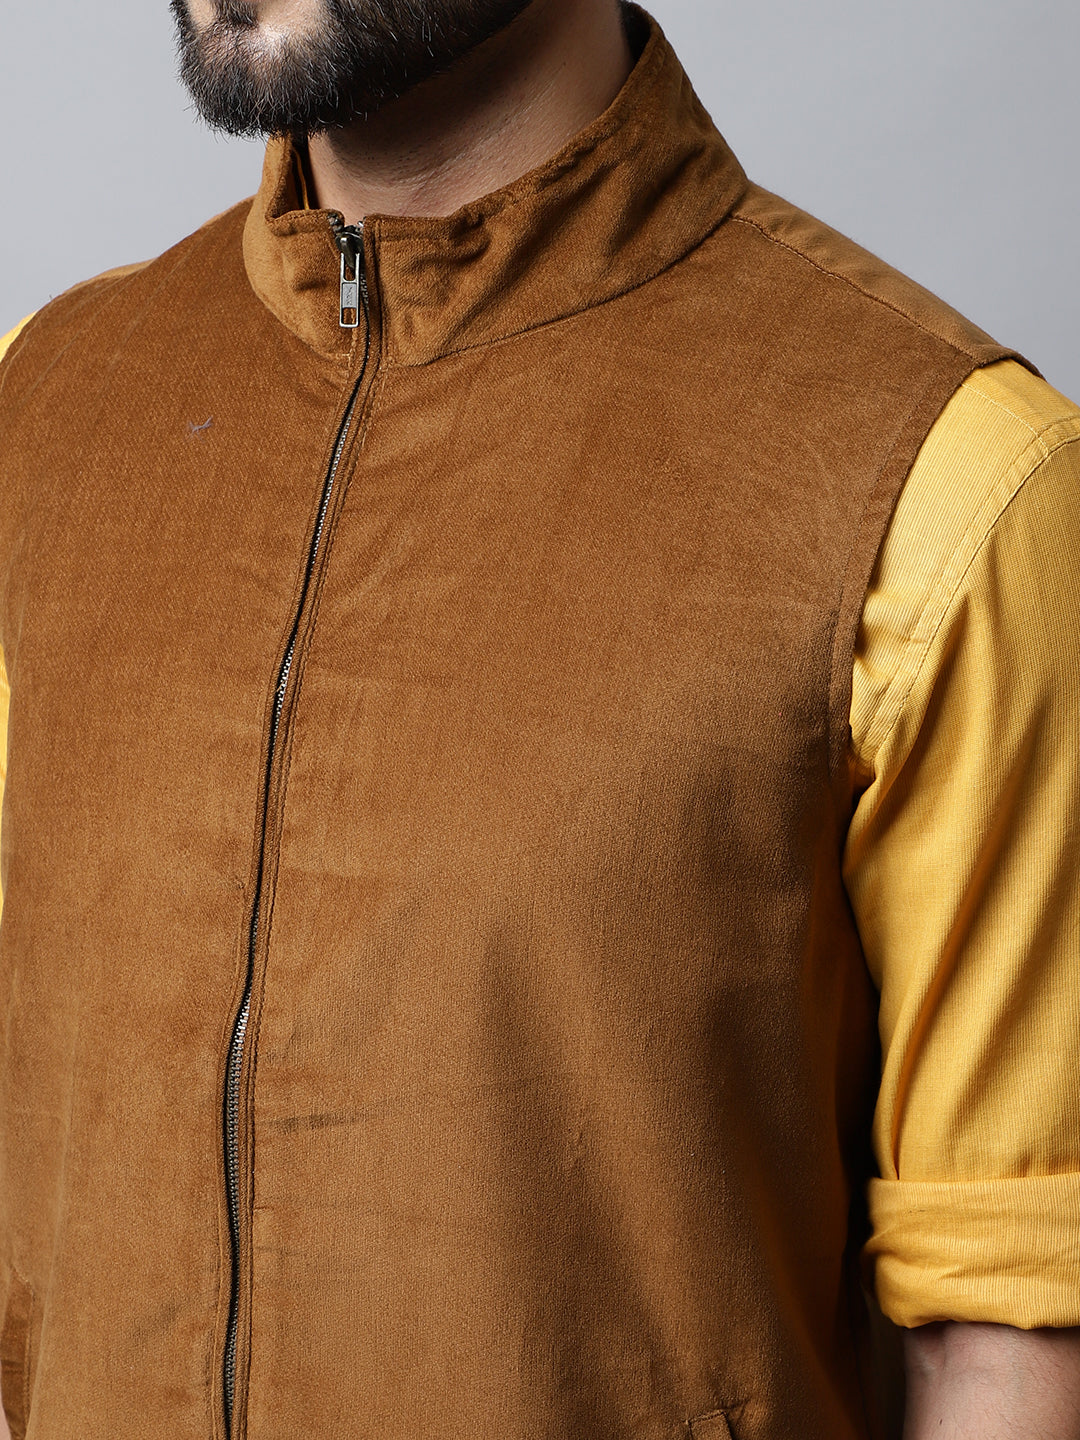 Shop Brown Art Silk Jacquard Nehru Jacket Online at Best Price | Cbazaar